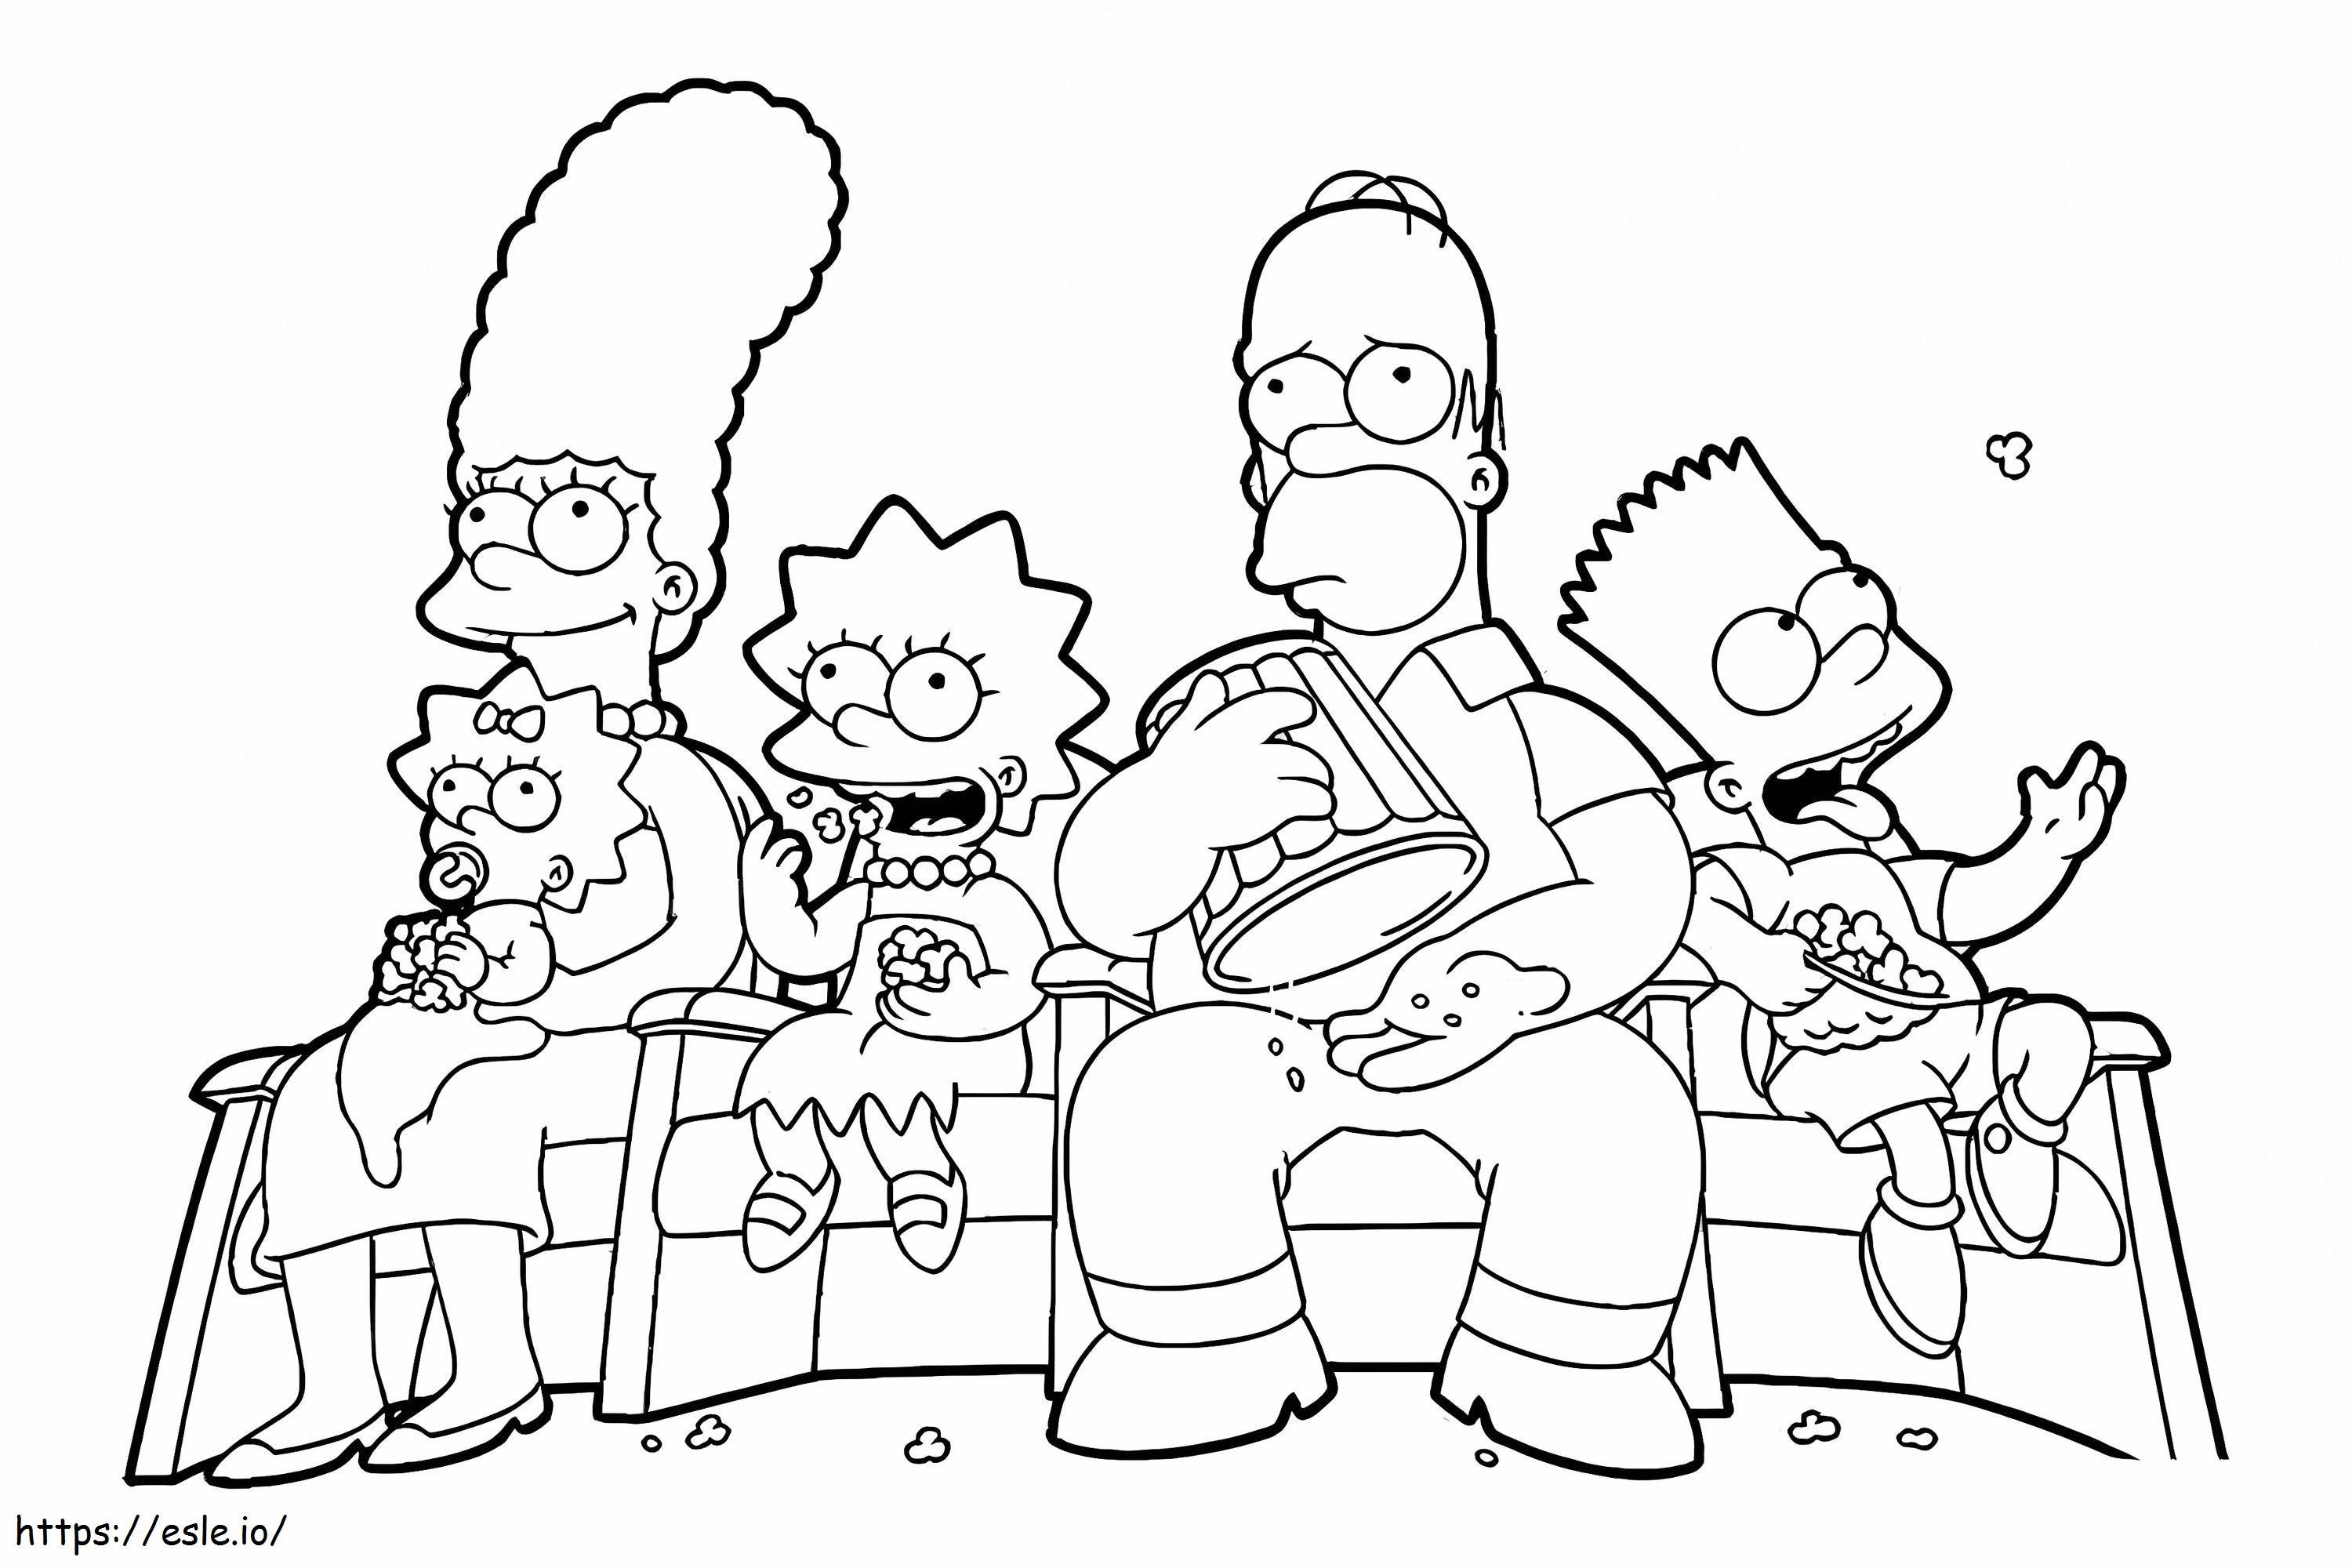 Familia Simpsons se uită la film de colorat